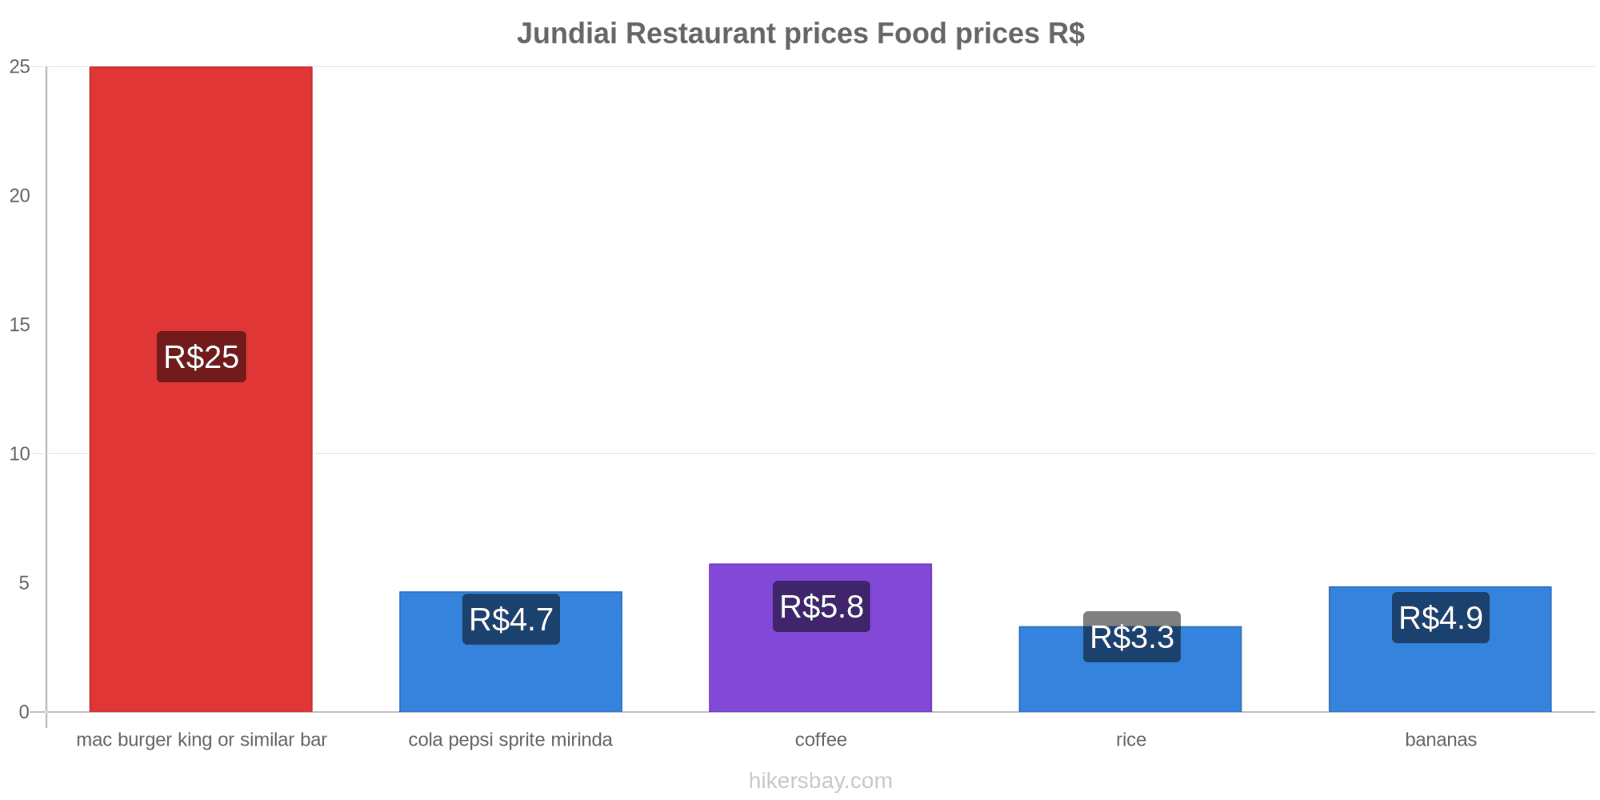 Jundiai price changes hikersbay.com